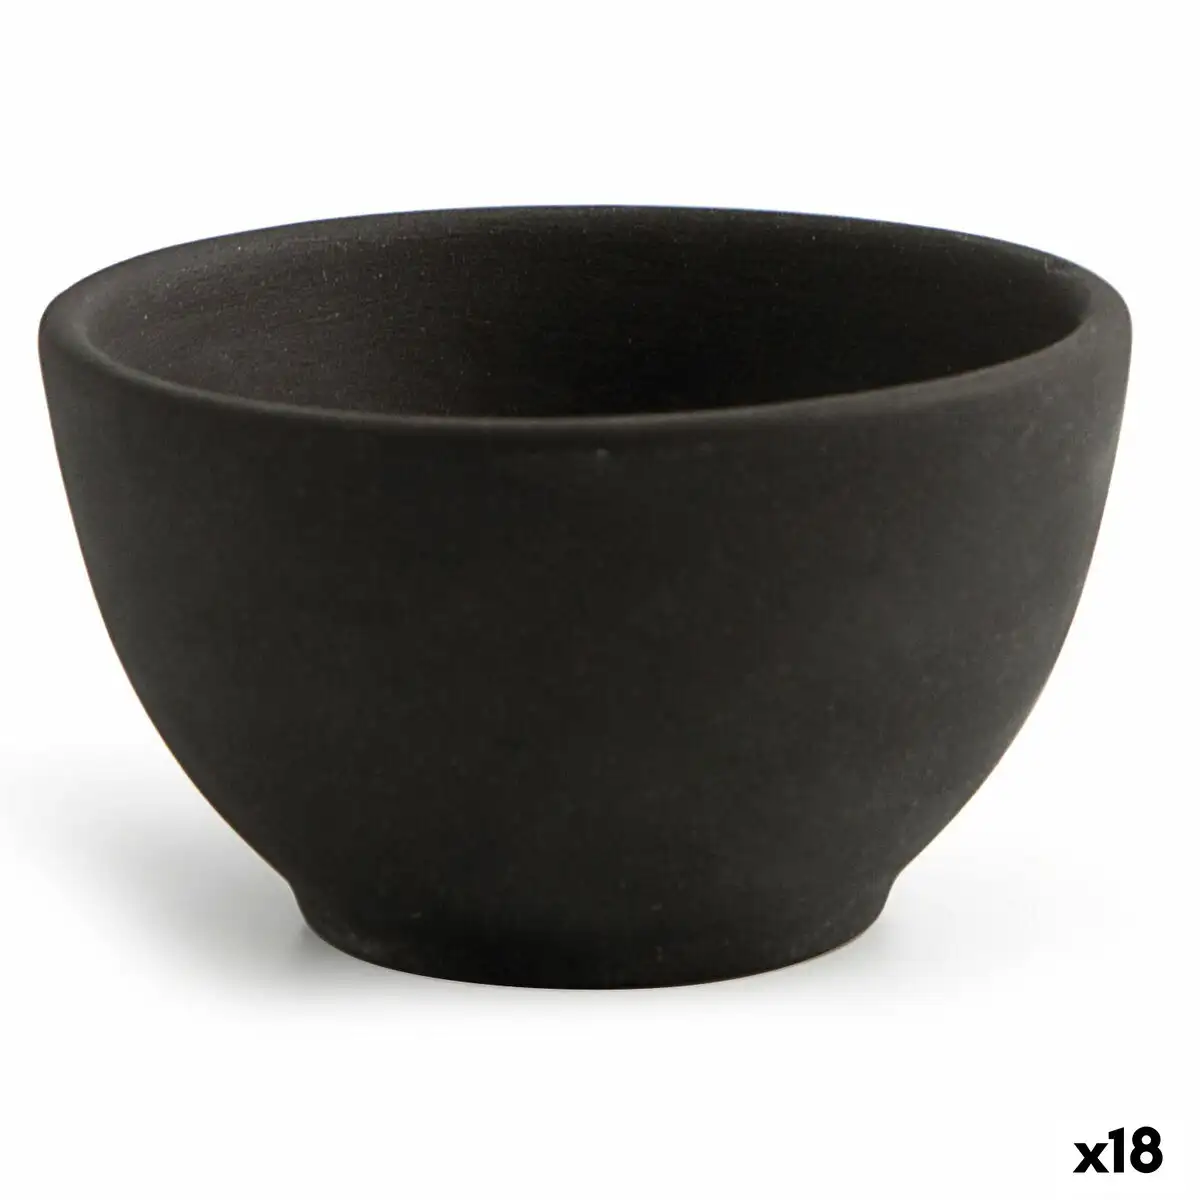 Bol quid mineral ceramique noir 9 x 5 cm 18 unites _4303. DIAYTAR SENEGAL - Là où Chaque Achat a du Sens. Explorez notre gamme et choisissez des produits qui racontent une histoire, votre histoire.